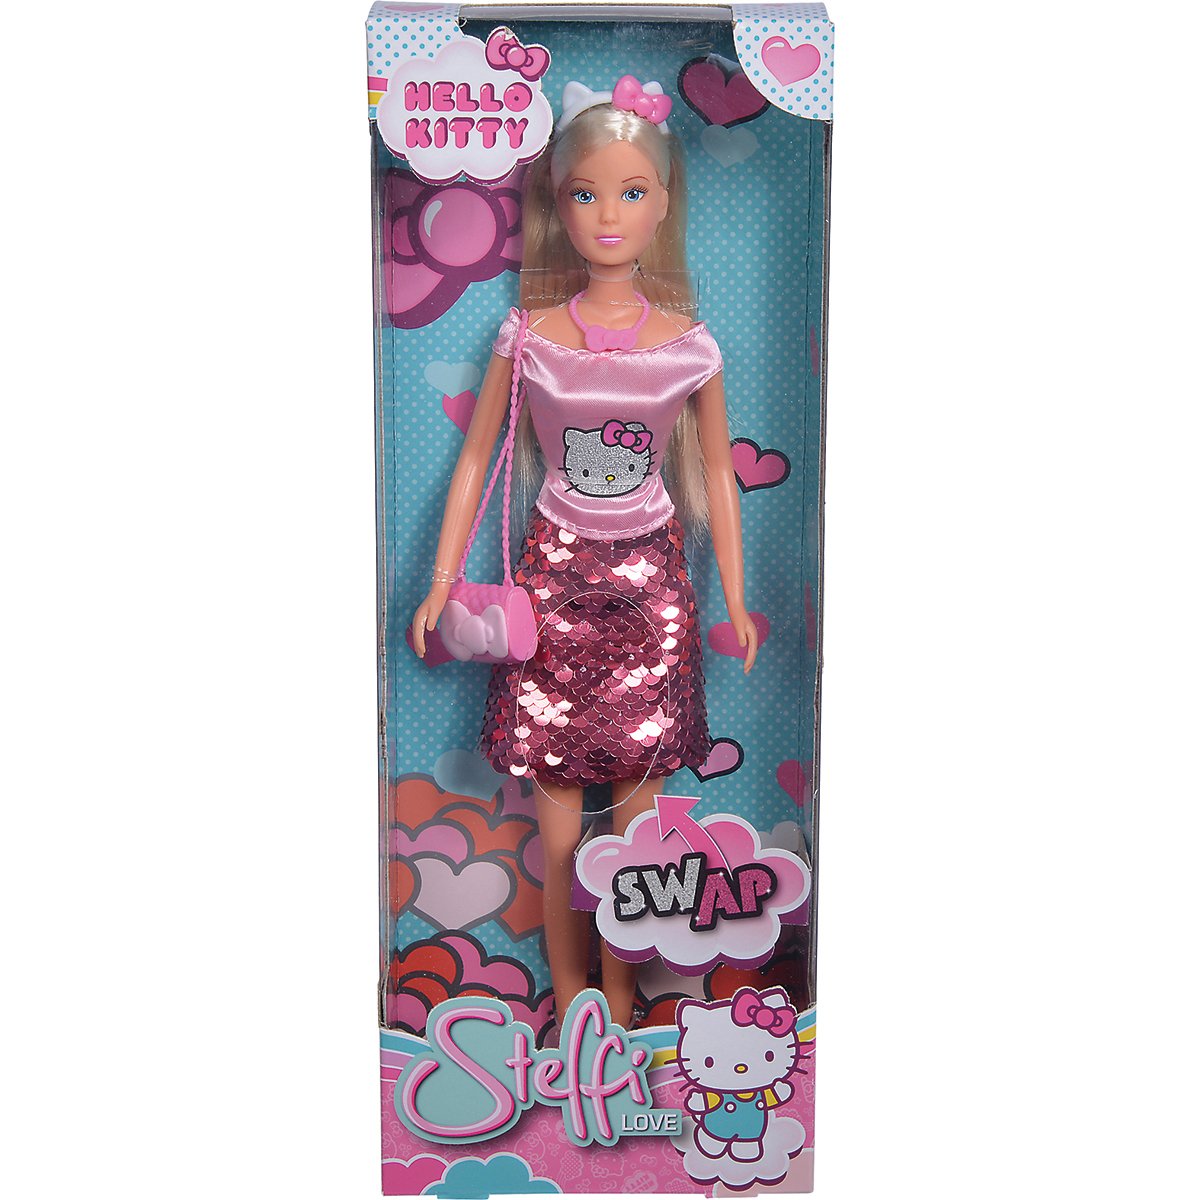 Papusa Steffi Love cu rochita cu imprimeu Hello Kitty noriel.ro